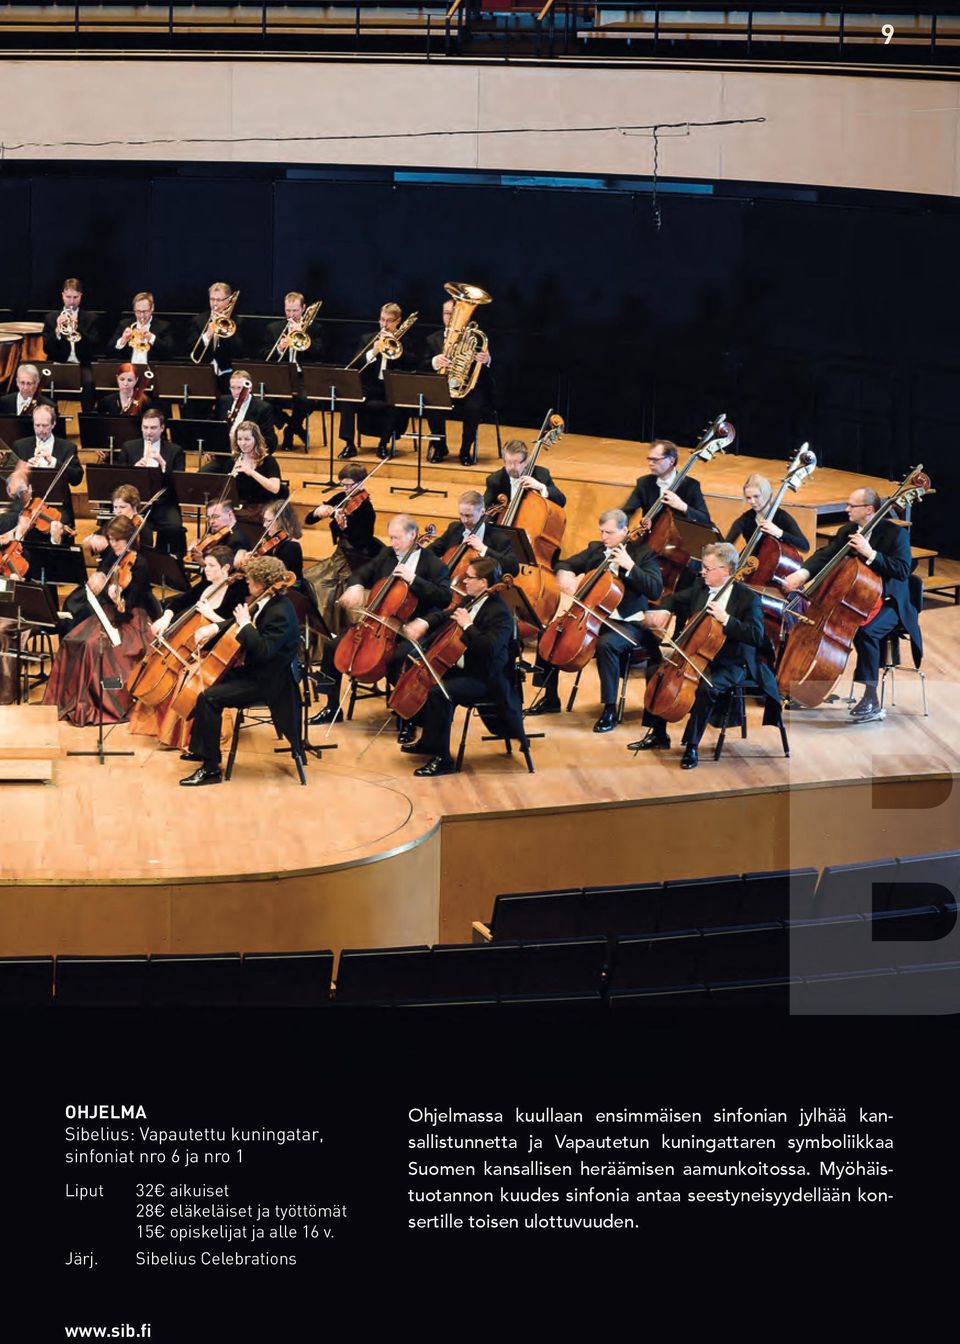 Sibelius Celebrations Ohjelmassa kuullaan ensimmäisen sinfonian jylhää kansallistunnetta ja